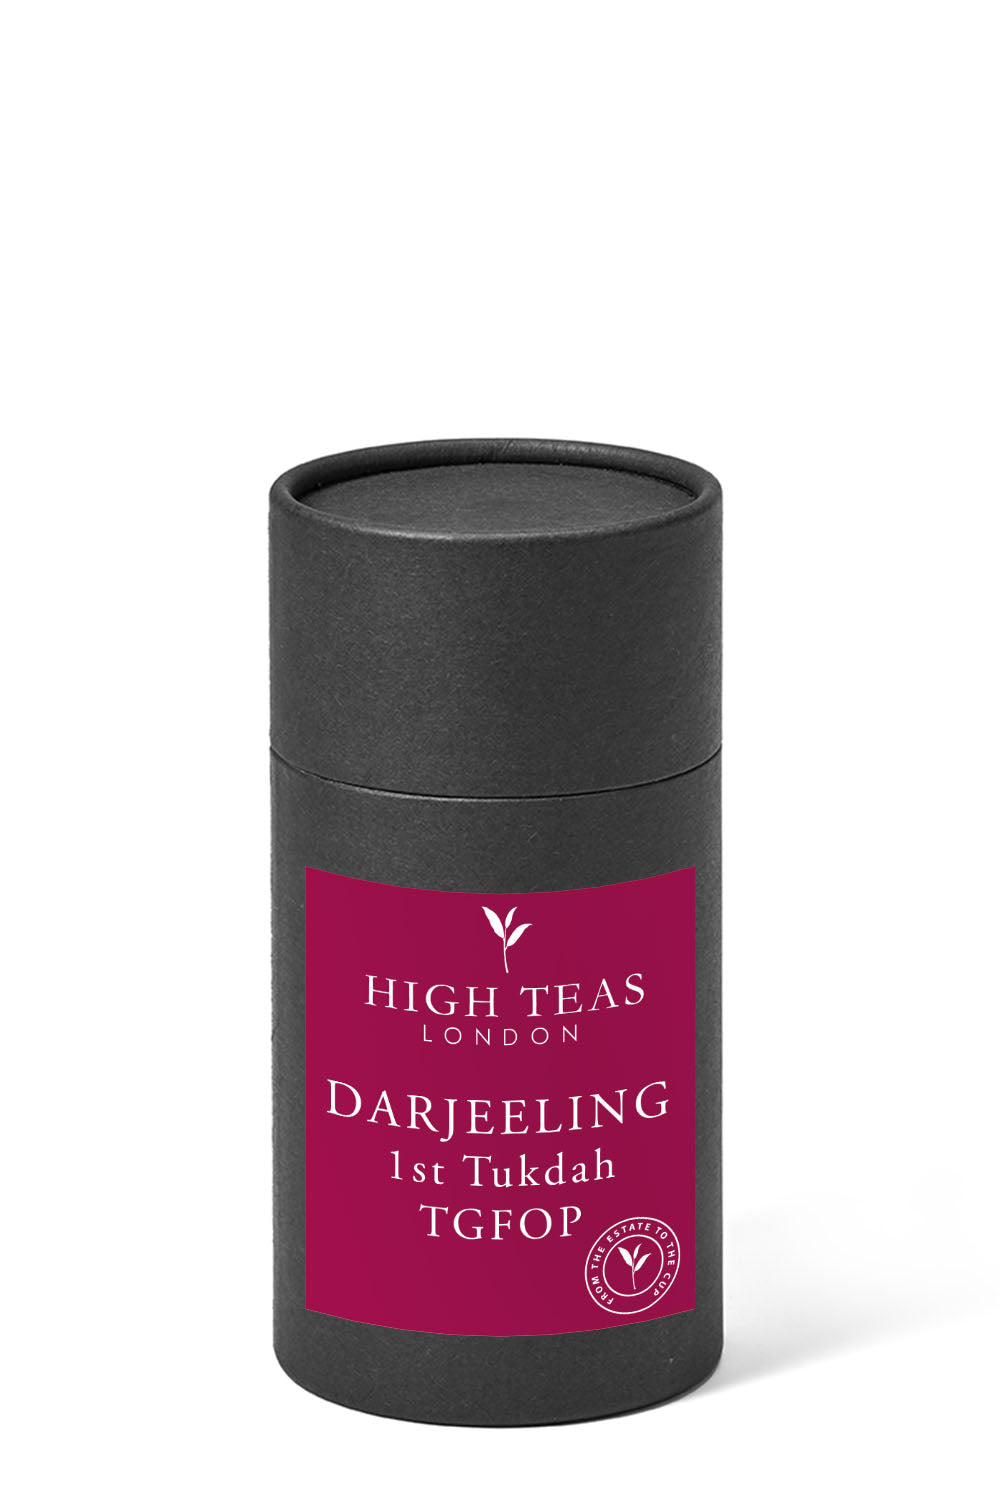 Darjeeling 1st Tukdah TGFOP-60g gift-Loose Leaf Tea-High Teas